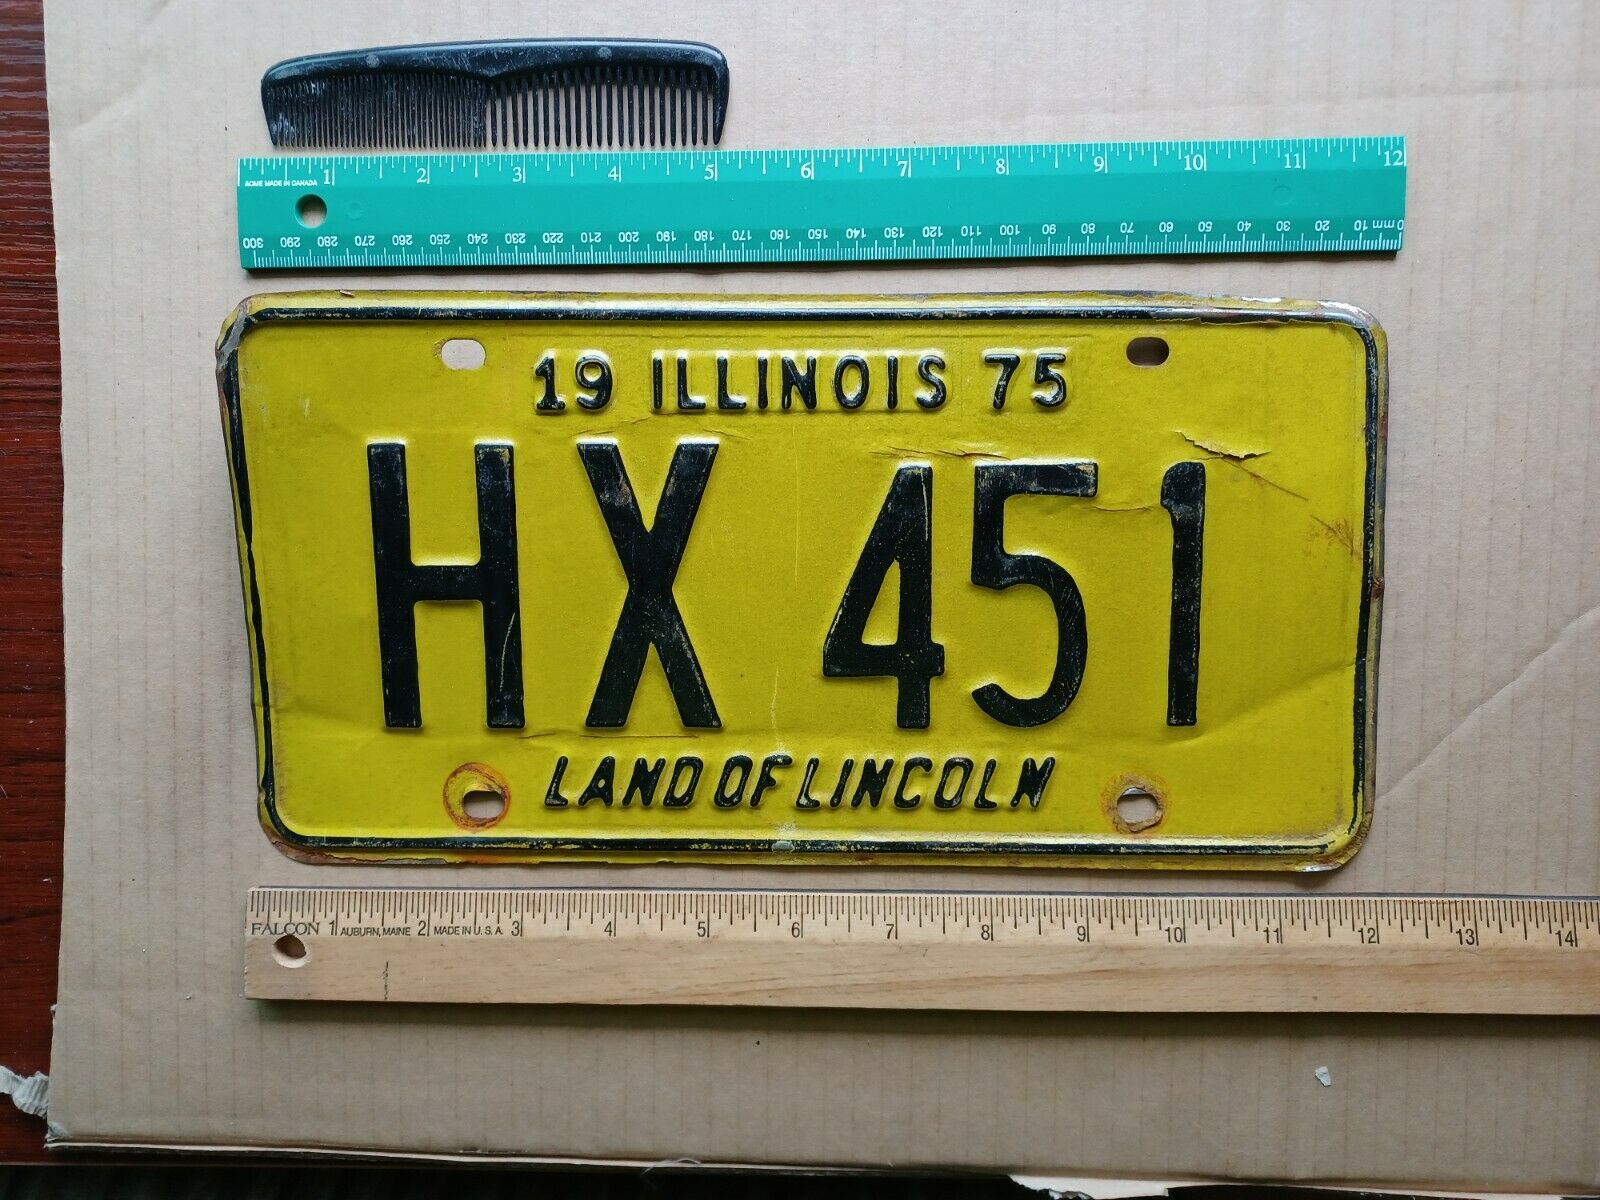 License Plate, Illinois, 1975, Hx 451